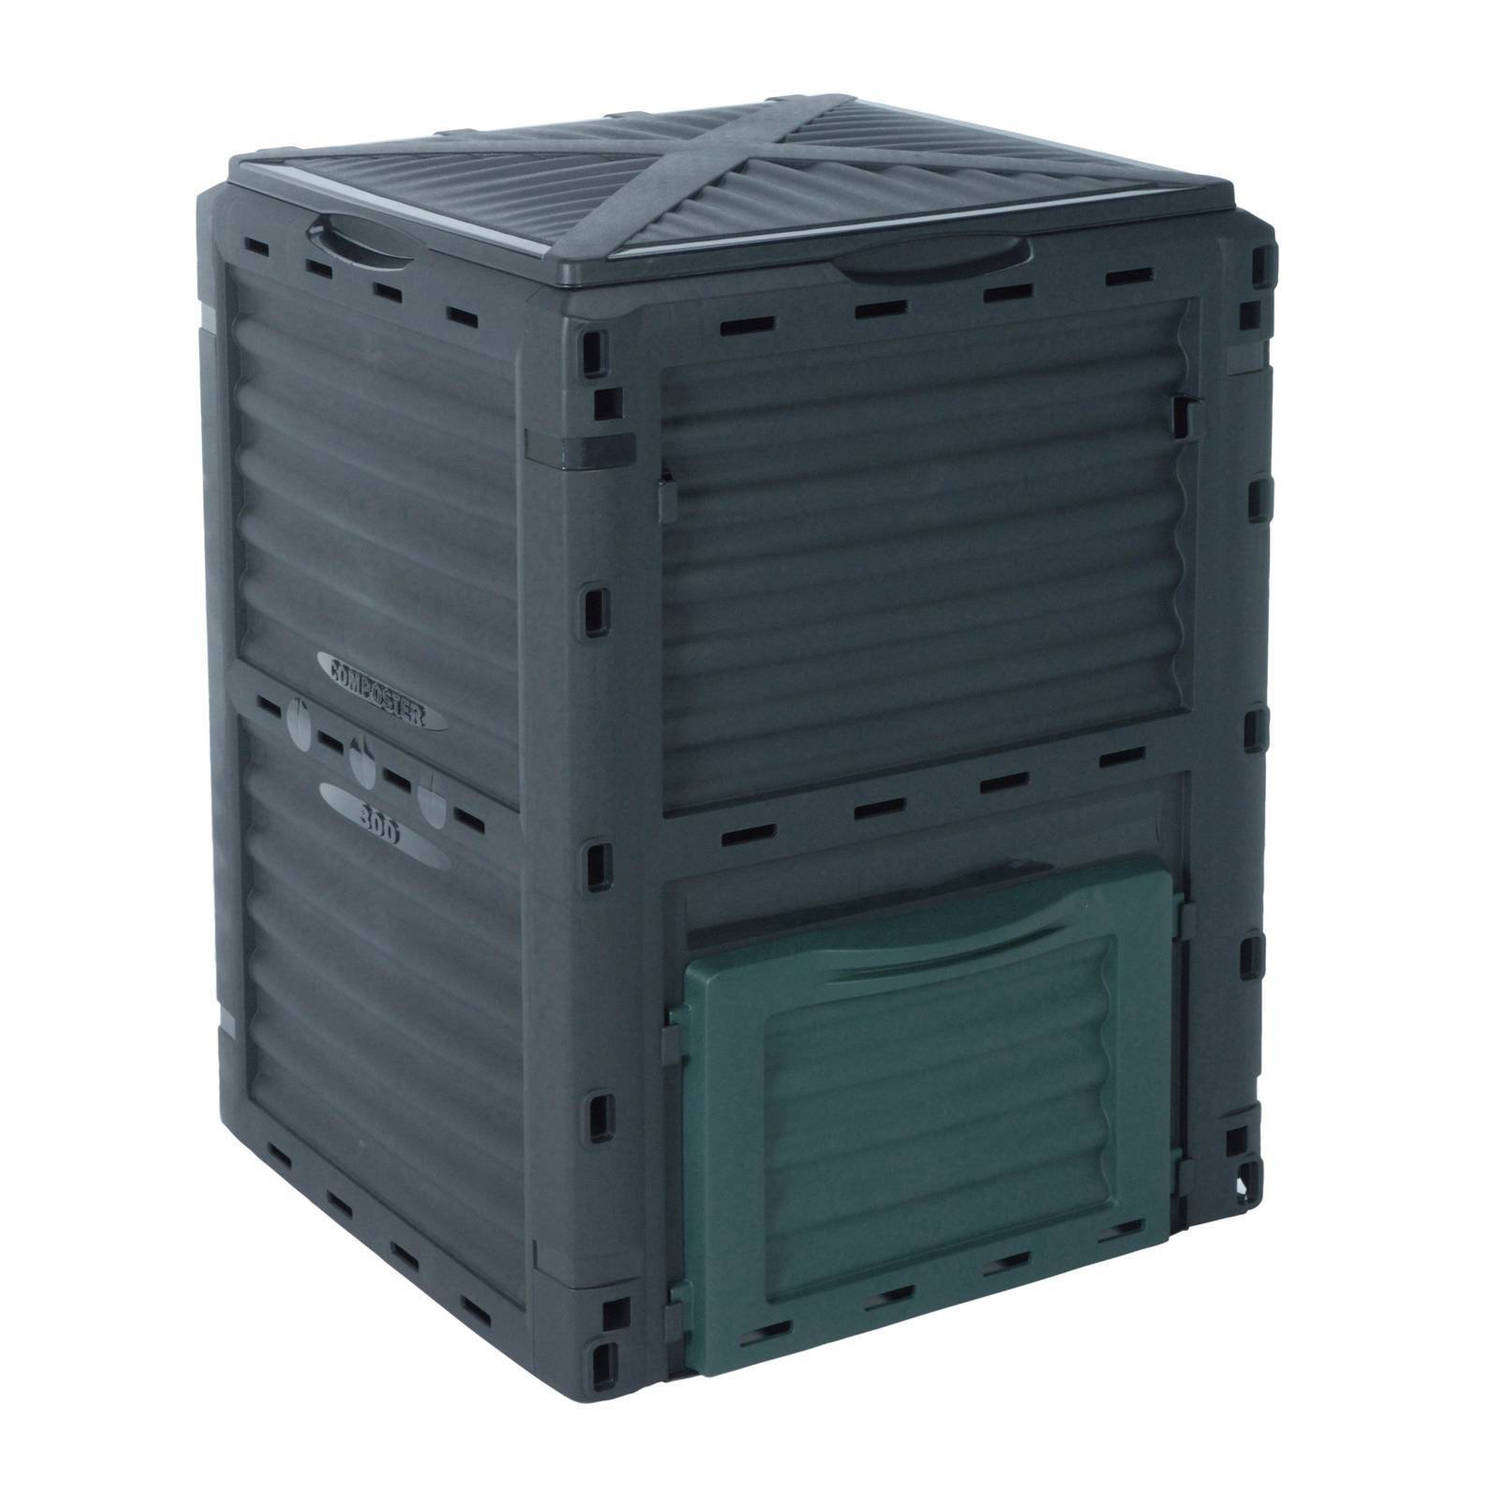 Teien compostbak 300 liter - PP compostvat / composter 59x57x81 cm - antraciet en groen